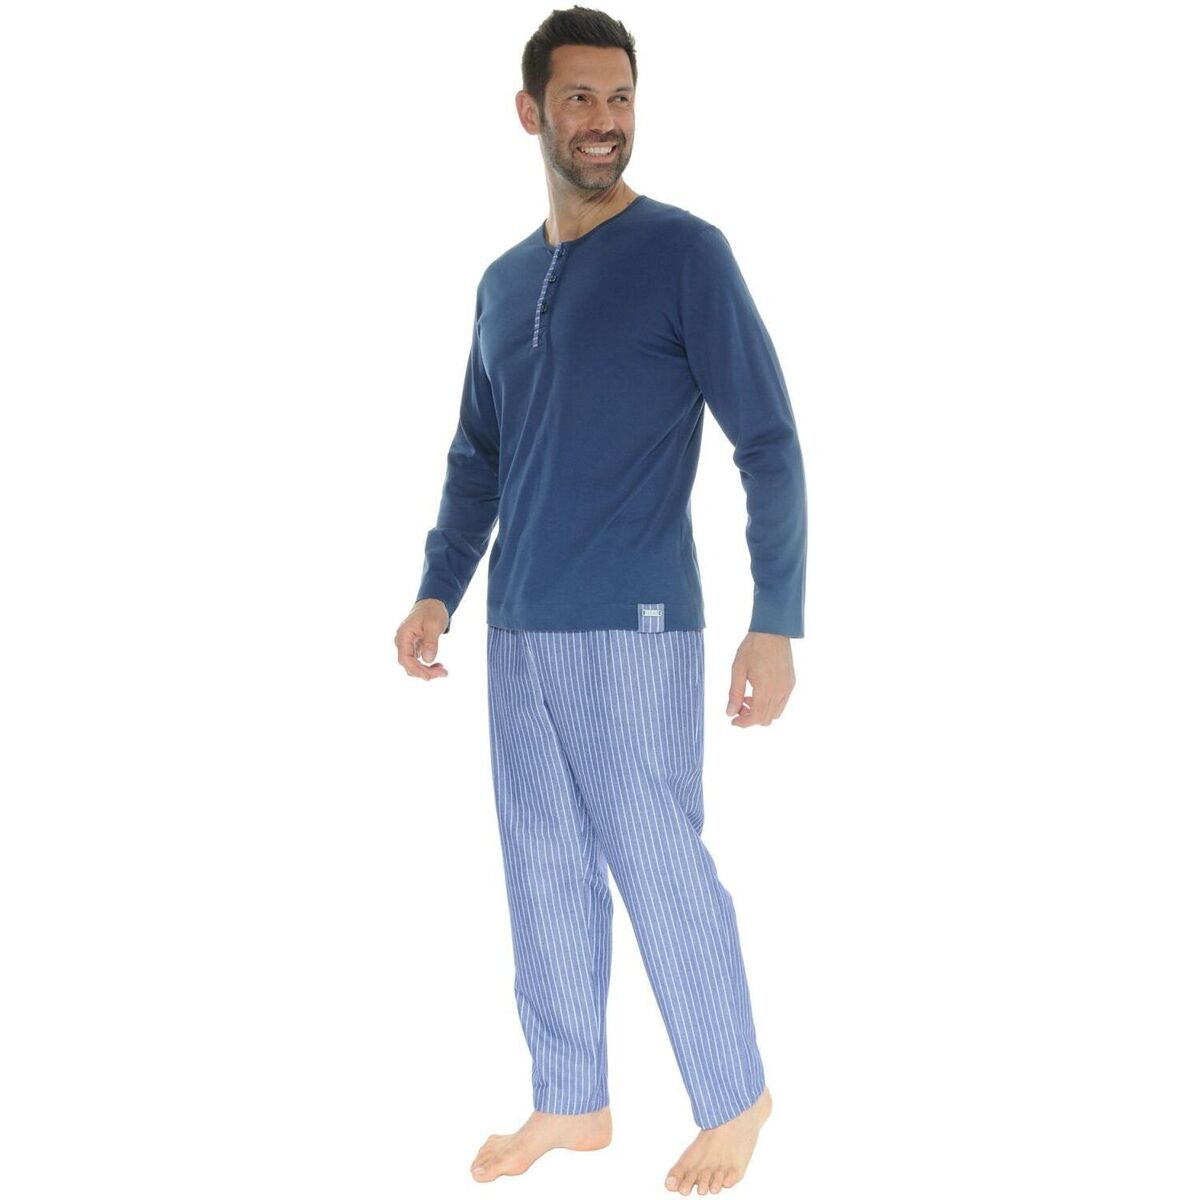 Îmbracaminte Bărbați Pijamale și Cămăsi de noapte Pilus LEANDRE albastru